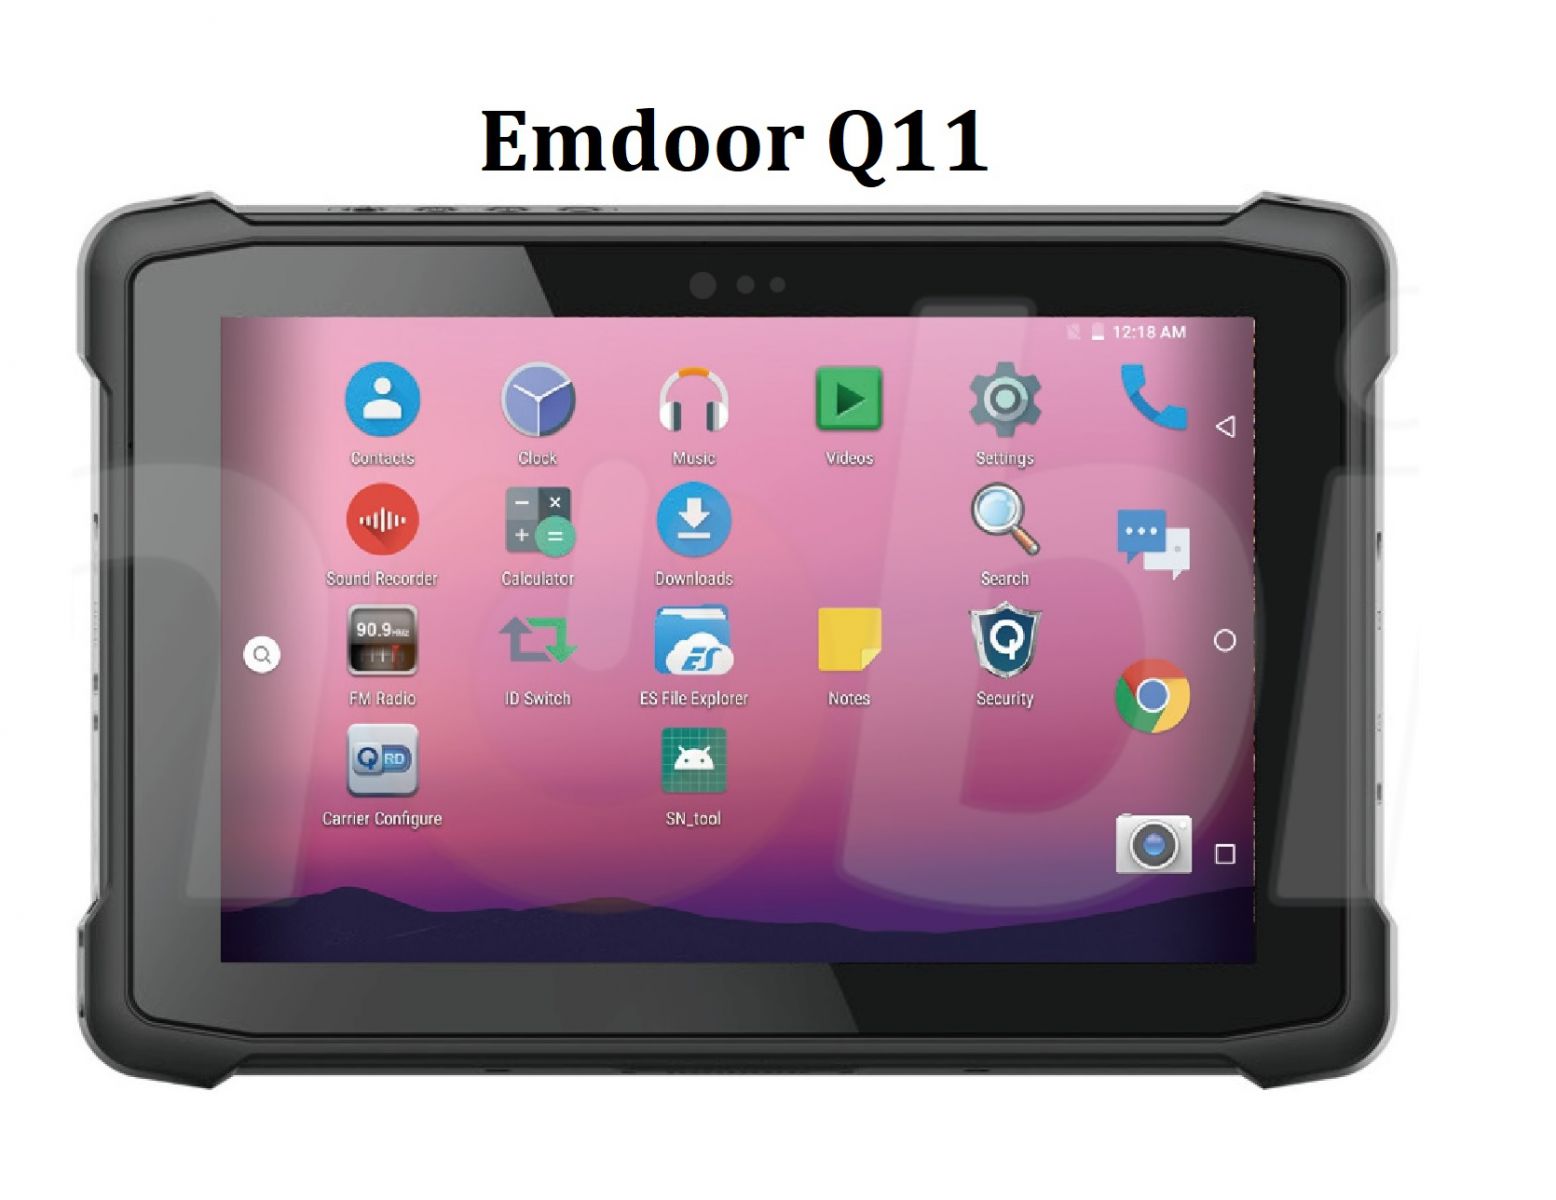 Emdoor Q11 v.3 - Odporny na upadki dziesiciocalowy tablet z Bluetooth 4.1, 4GB RAM pamici, dyskiem 64GB, czytnikiem kodw 2D N3680 Honeywell, NFC  i 4G 